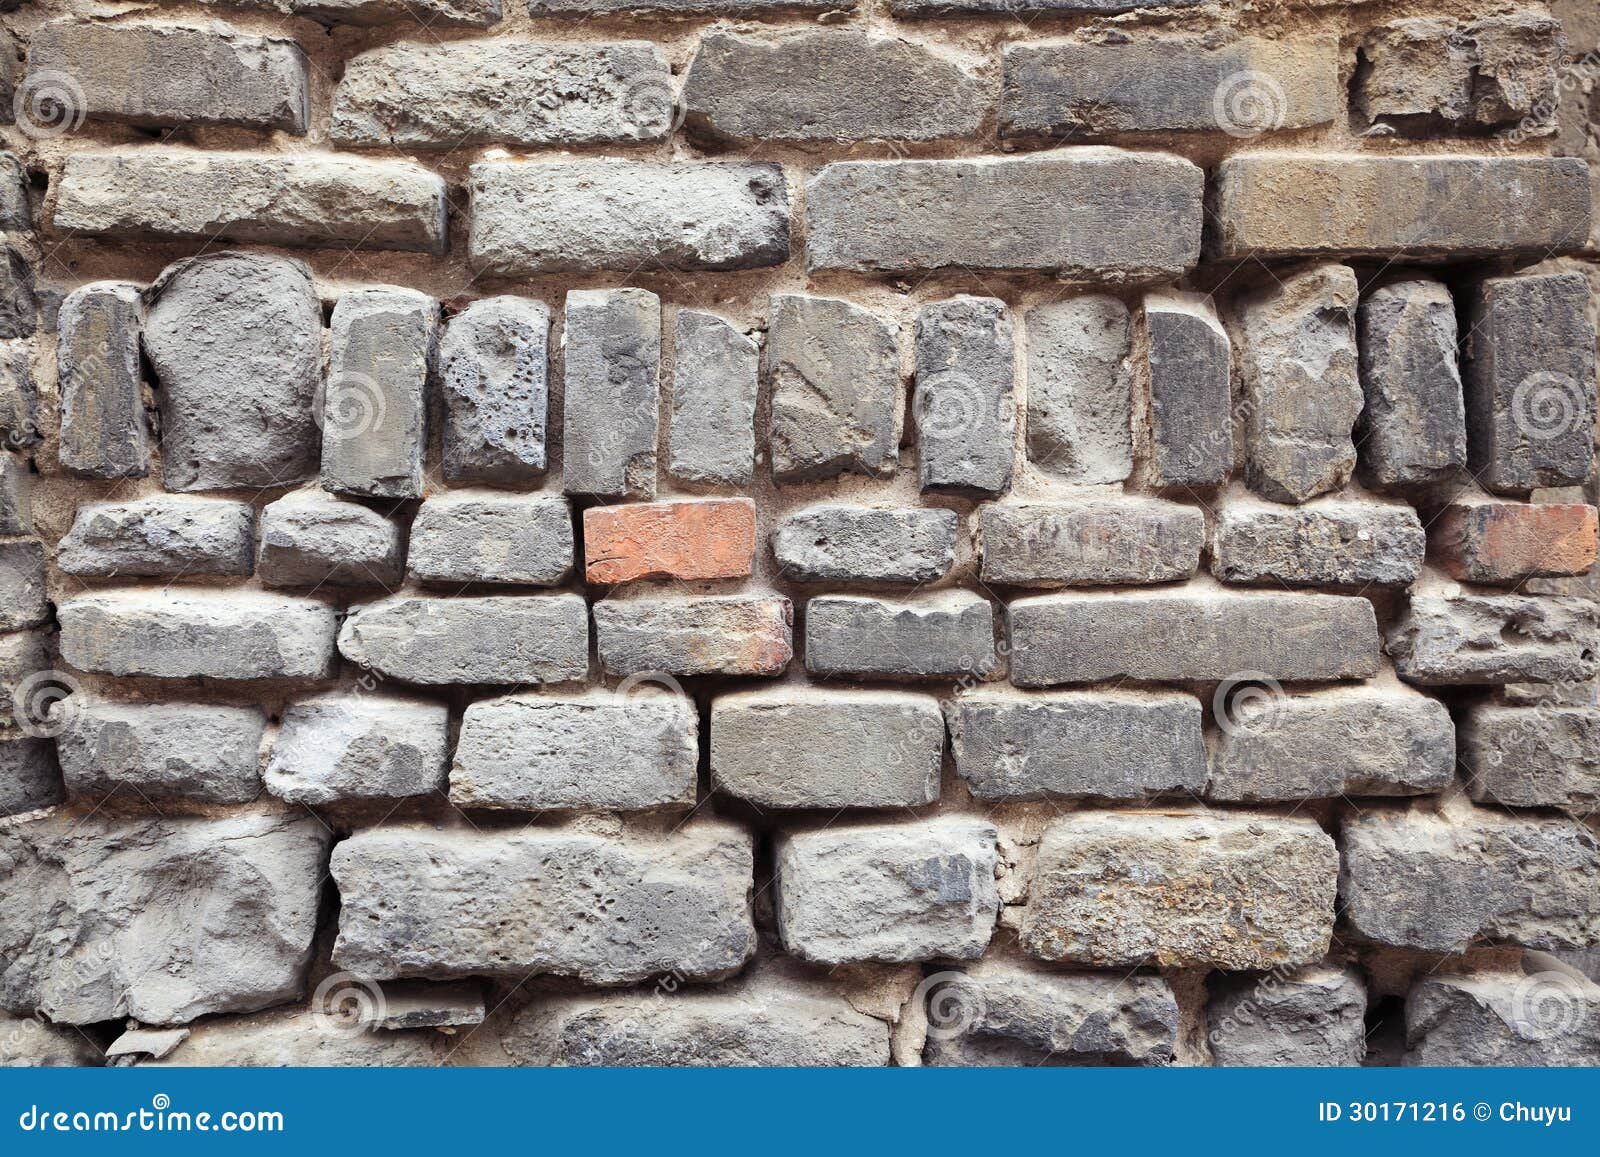 Old Grey Bricks Wall Closeup Stock Photo Image of detail 